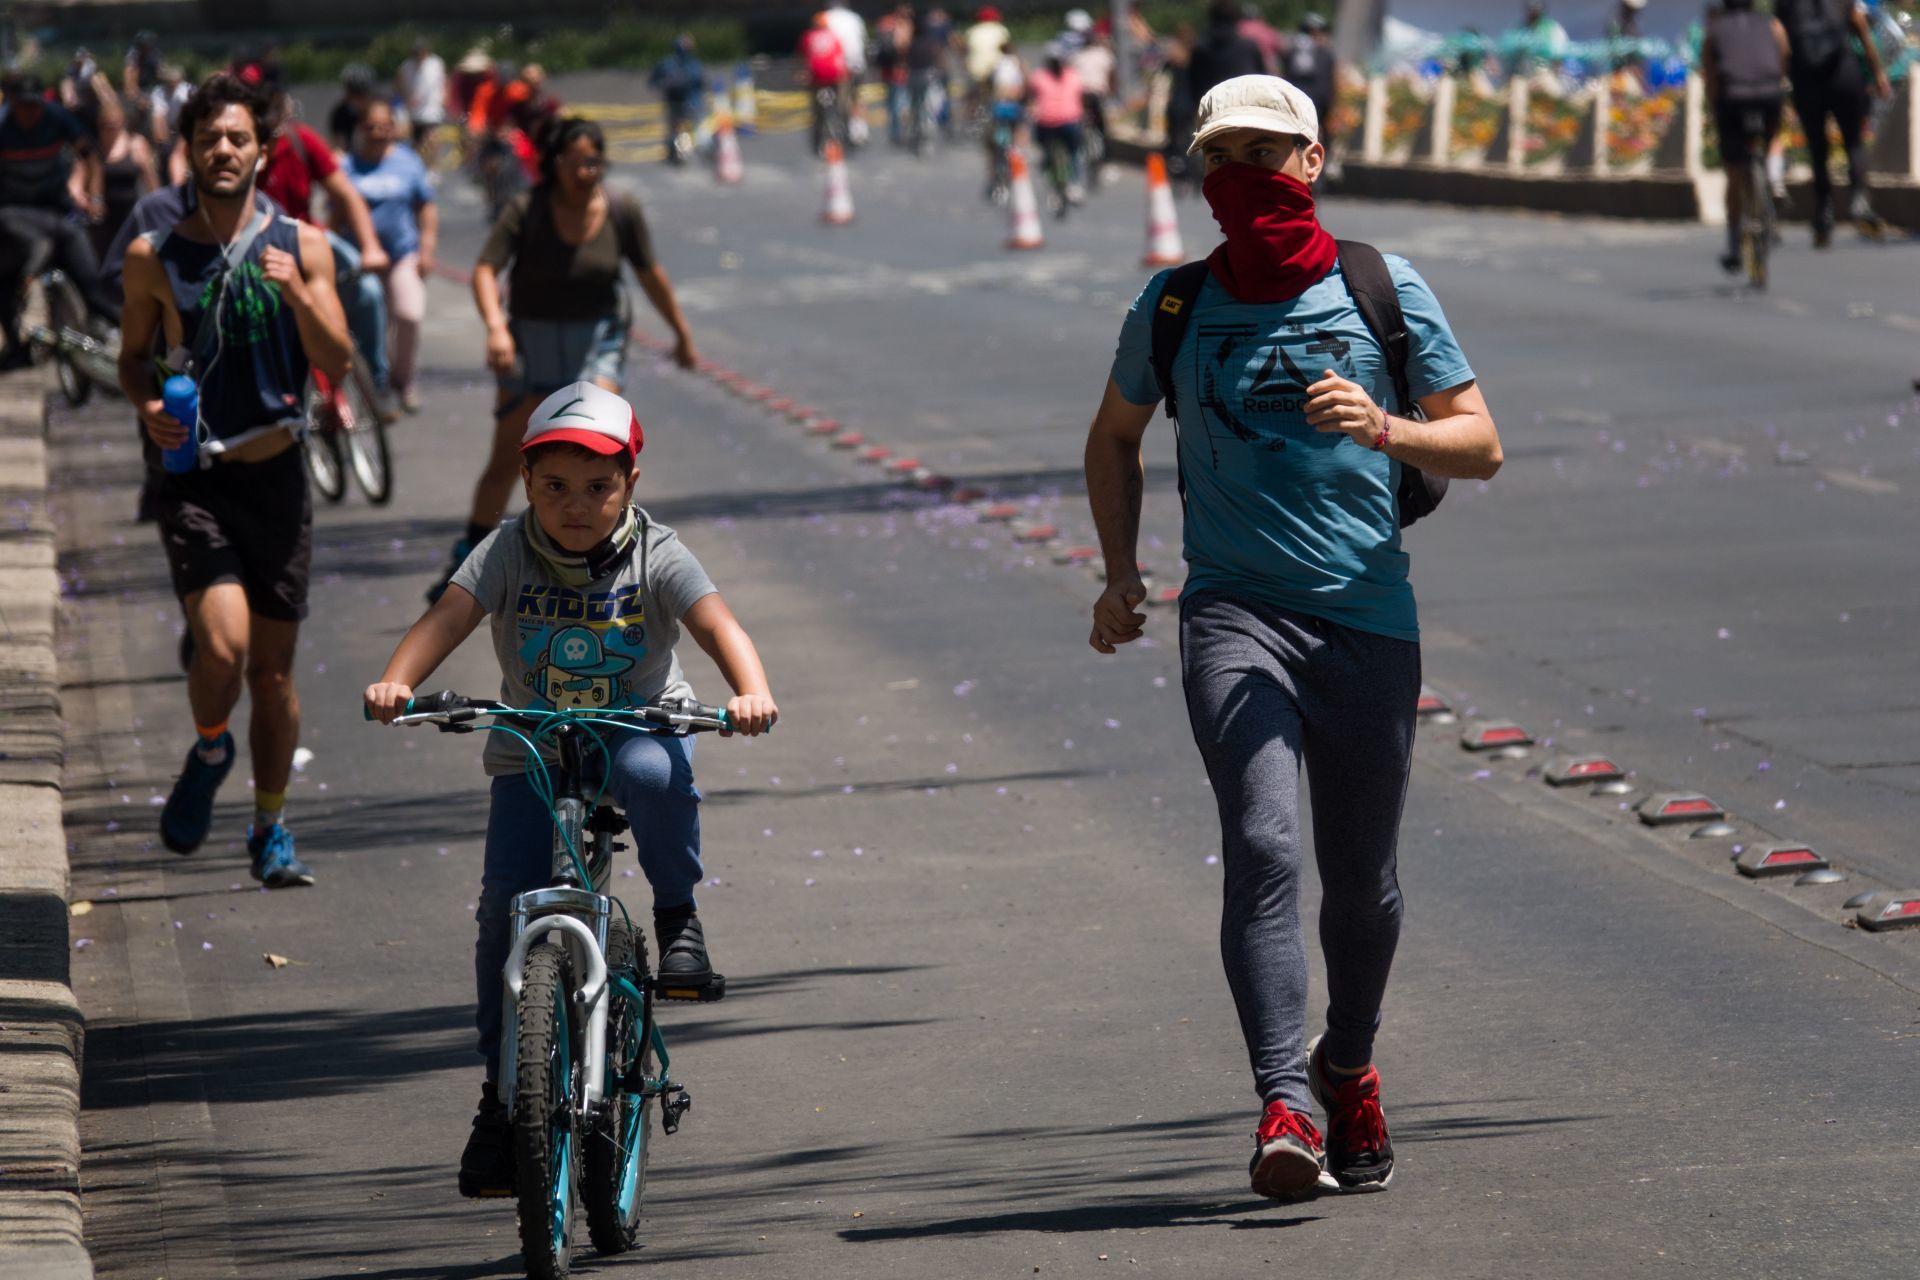 Este domingo regresa el Paseo Ciclista "Muévete en Bici" a la CDMX y acá te contamos los detalles